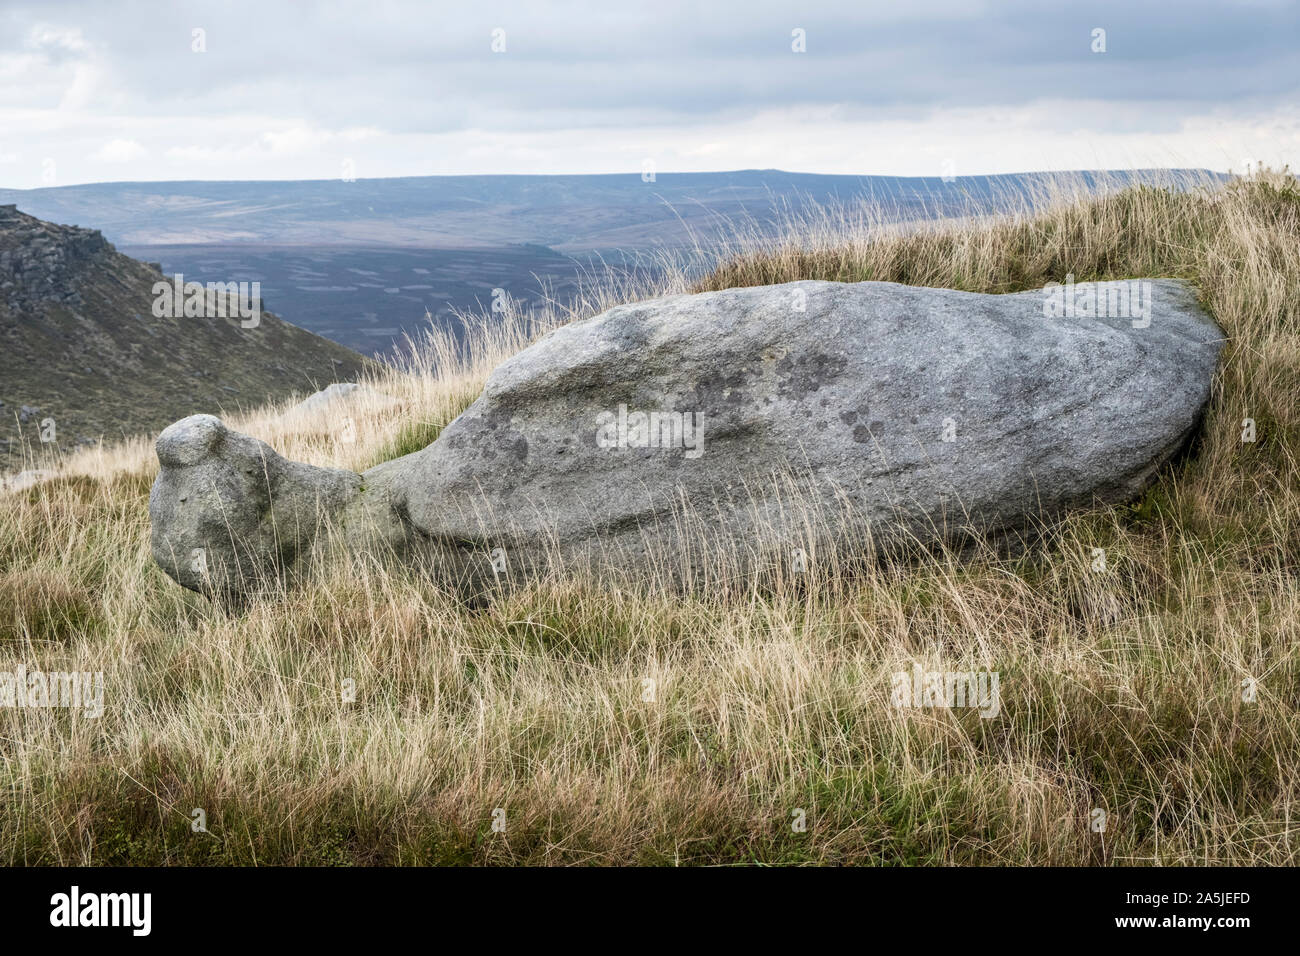 Schnecke geformte gritstone (Kieselsäurehaltigen Sandstein) auch als mühlstein Grit bekannt, am Hang auf Kinder Scout, Derbyshire, Peak District, England, Großbritannien Stockfoto